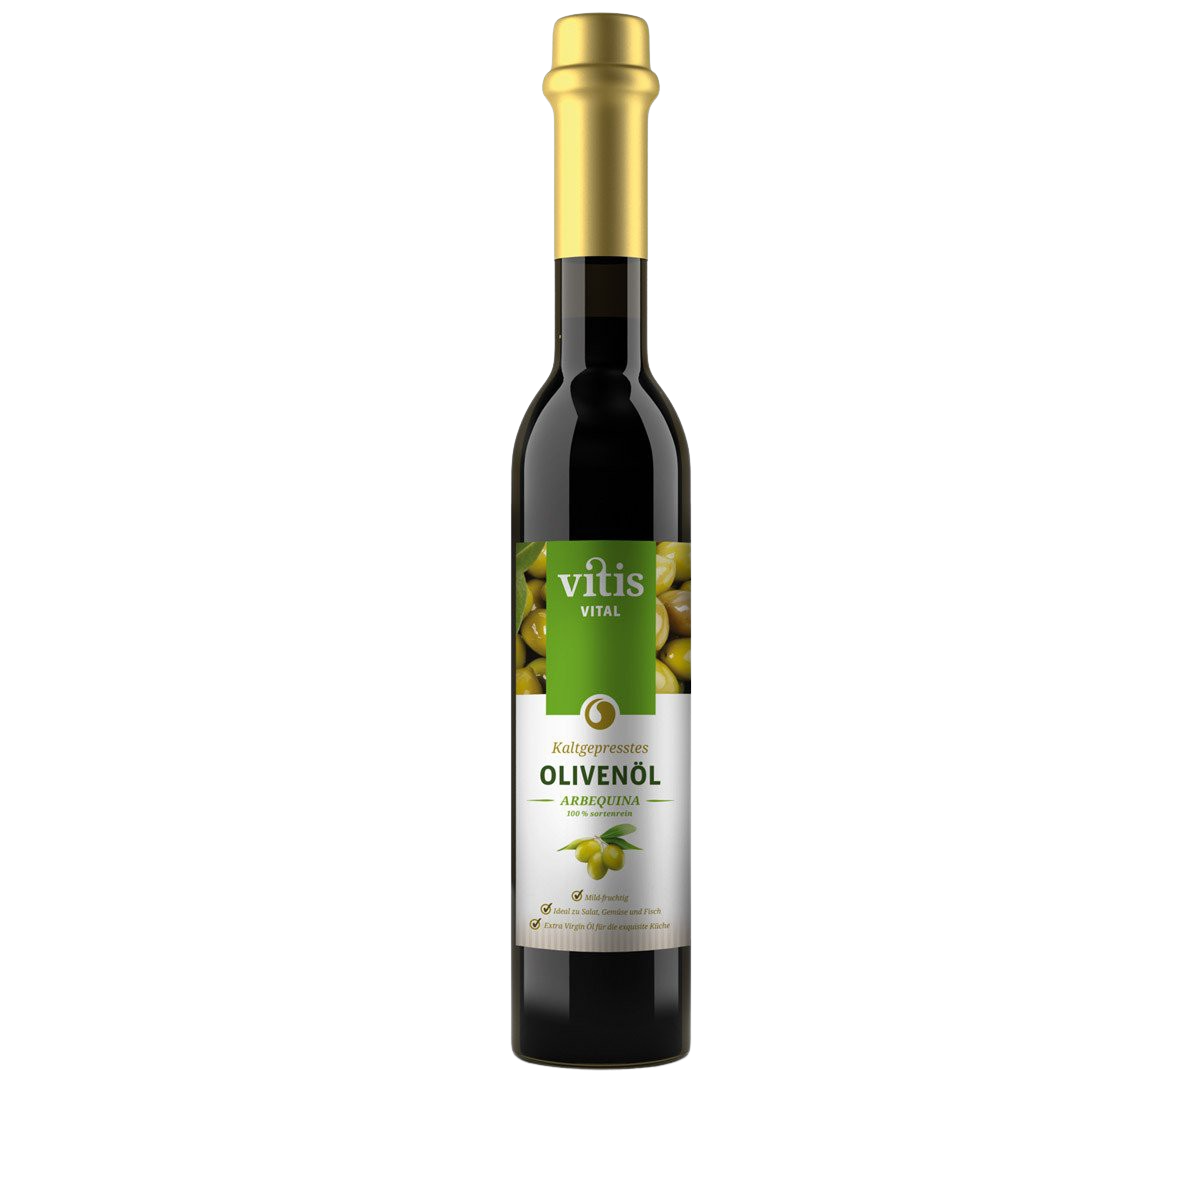 eine Flasche Arbequina Olivenöl von der Firma Vitis Traubenkern GmbH